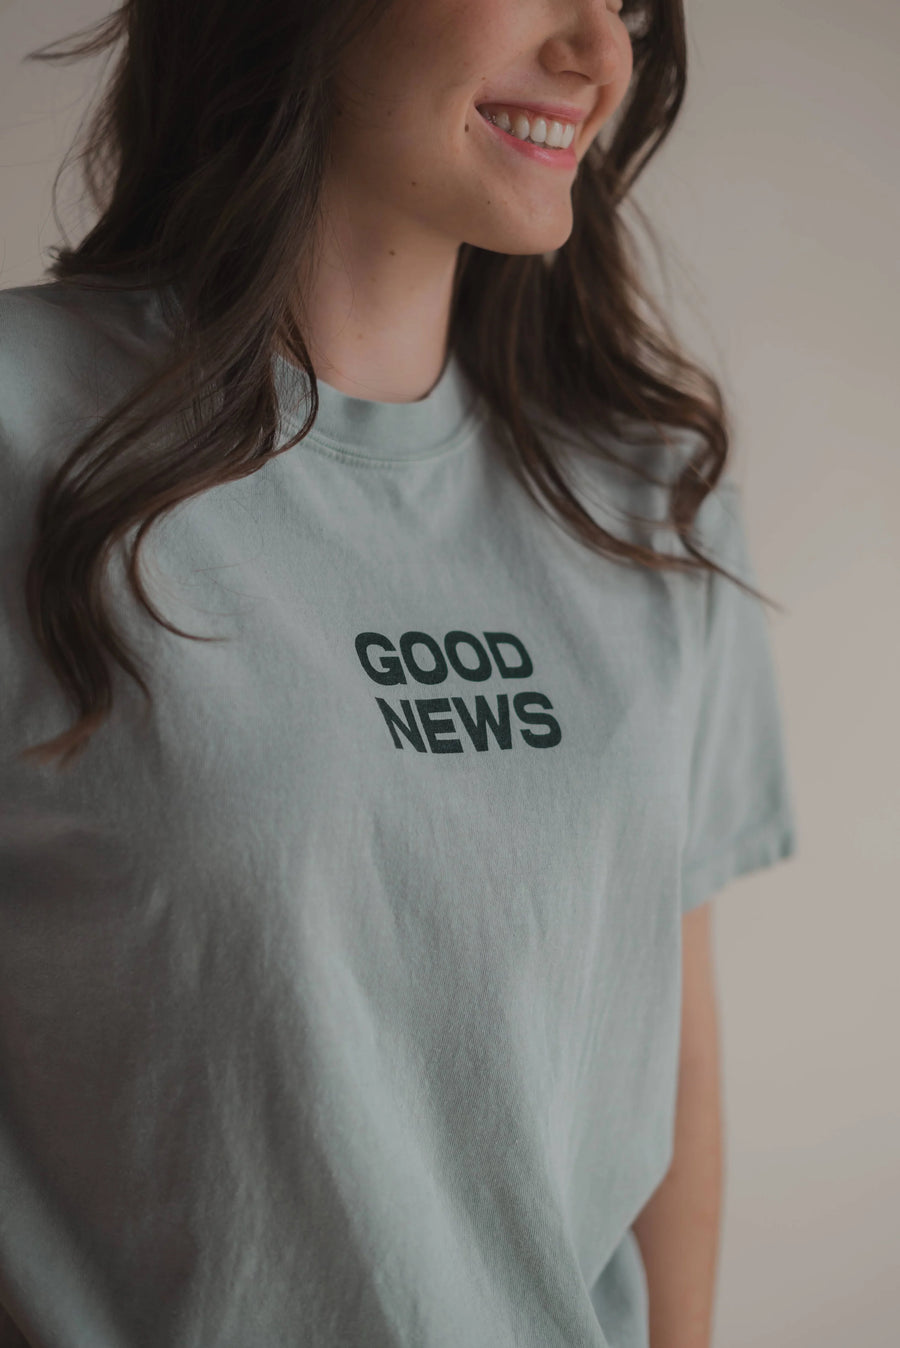 Good News Tee -  Christian Tee